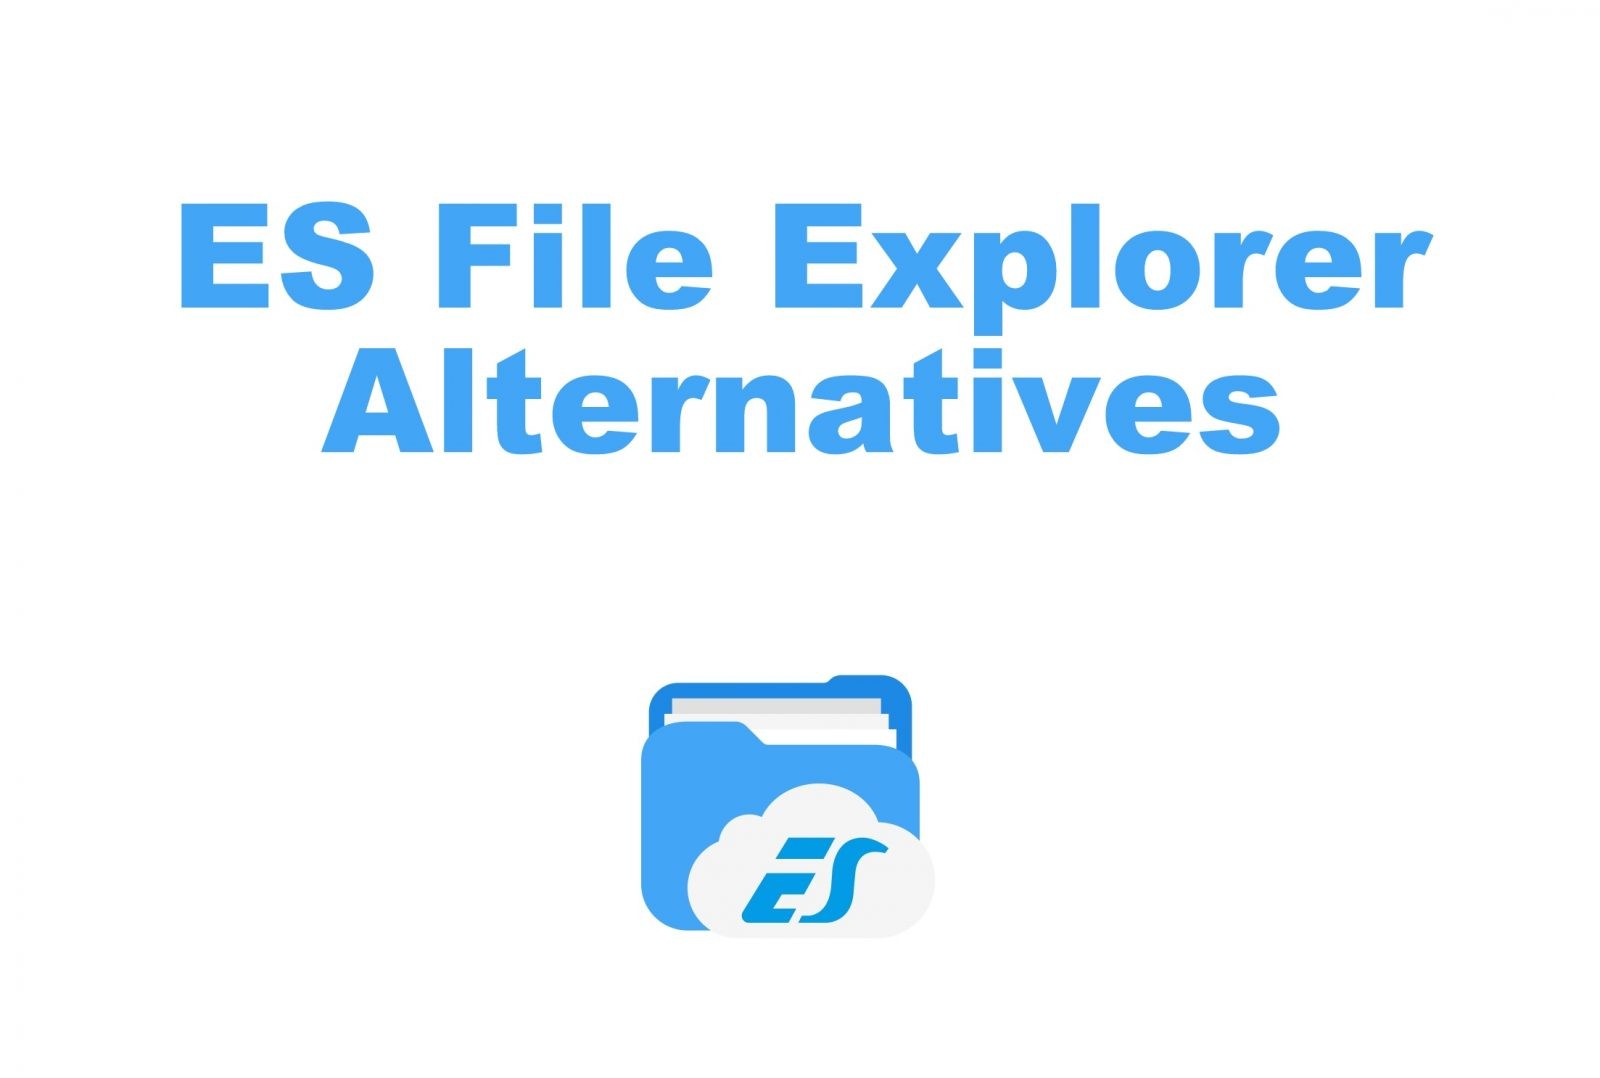 أفضل بدائل ES File Explorer في عام 2021